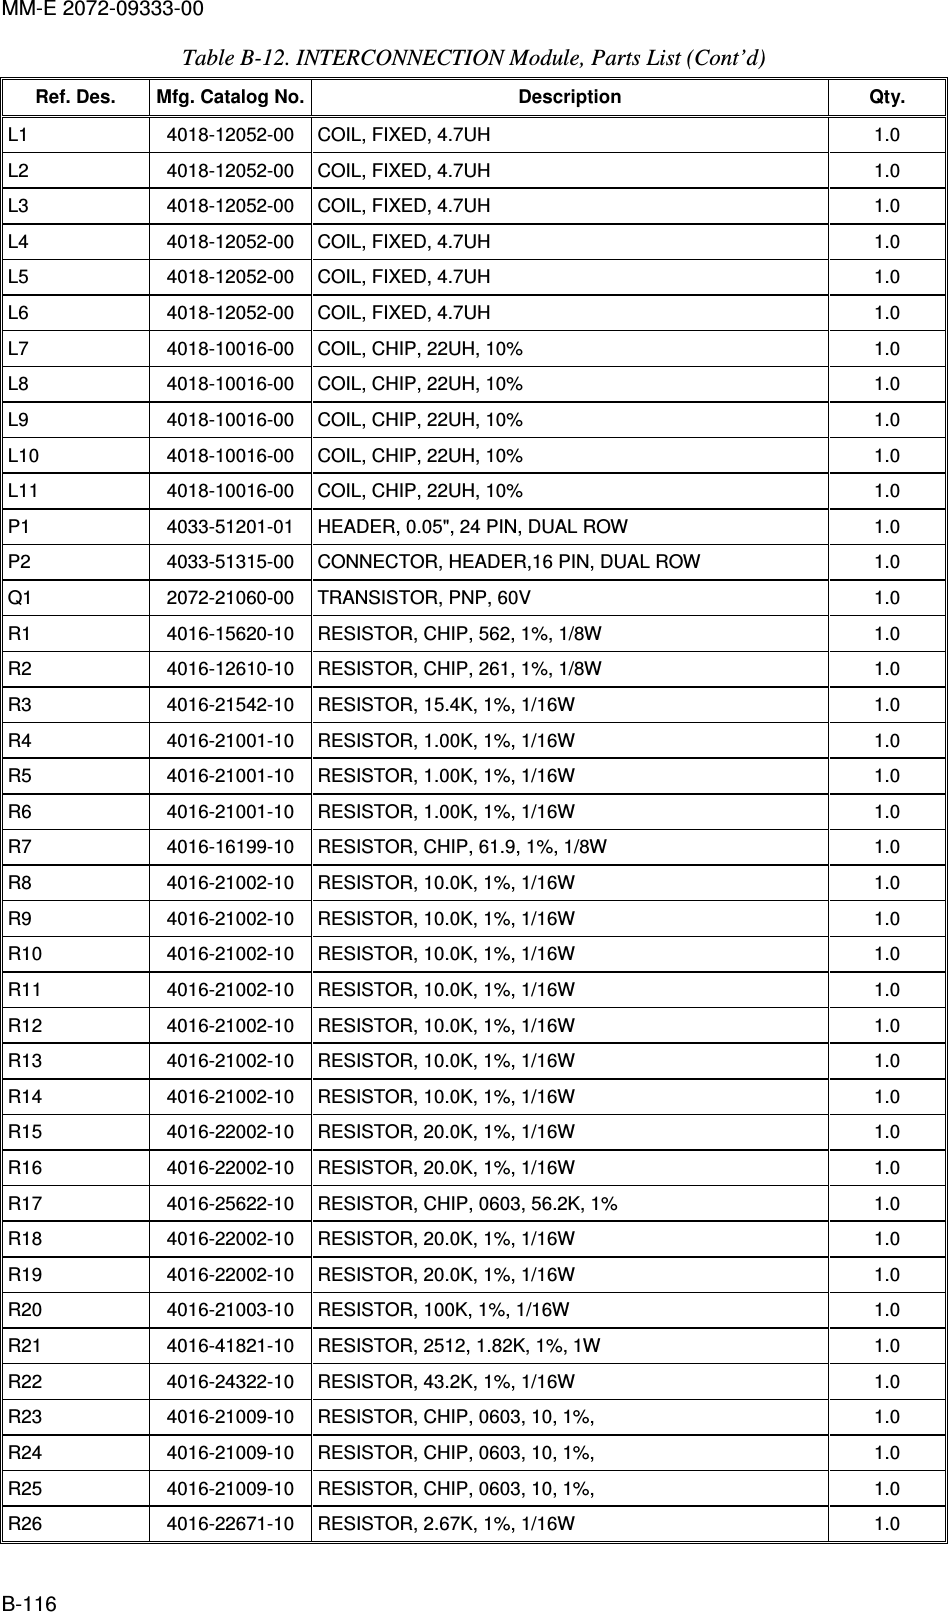 MM-E 2072-09333-00 B-116 Table  B-12. INTERCONNECTION Module, Parts List (Cont’d)  Ref. Des.  Mfg. Catalog No. Description  Qty. L1   4018-12052-00   COIL, FIXED, 4.7UH  1.0  L2   4018-12052-00   COIL, FIXED, 4.7UH  1.0  L3   4018-12052-00   COIL, FIXED, 4.7UH  1.0  L4   4018-12052-00   COIL, FIXED, 4.7UH  1.0  L5   4018-12052-00   COIL, FIXED, 4.7UH  1.0  L6   4018-12052-00   COIL, FIXED, 4.7UH  1.0  L7   4018-10016-00   COIL, CHIP, 22UH, 10%  1.0  L8   4018-10016-00   COIL, CHIP, 22UH, 10%  1.0  L9   4018-10016-00   COIL, CHIP, 22UH, 10%  1.0  L10   4018-10016-00   COIL, CHIP, 22UH, 10%  1.0  L11   4018-10016-00   COIL, CHIP, 22UH, 10%   1.0  P1   4033-51201-01   HEADER, 0.05&quot;, 24 PIN, DUAL ROW   1.0  P2   4033-51315-00   CONNECTOR, HEADER,16 PIN, DUAL ROW   1.0  Q1   2072-21060-00   TRANSISTOR, PNP, 60V   1.0  R1   4016-15620-10   RESISTOR, CHIP, 562, 1%, 1/8W   1.0  R2   4016-12610-10   RESISTOR, CHIP, 261, 1%, 1/8W   1.0  R3   4016-21542-10   RESISTOR, 15.4K, 1%, 1/16W   1.0  R4   4016-21001-10   RESISTOR, 1.00K, 1%, 1/16W   1.0  R5   4016-21001-10   RESISTOR, 1.00K, 1%, 1/16W   1.0  R6   4016-21001-10   RESISTOR, 1.00K, 1%, 1/16W   1.0  R7   4016-16199-10   RESISTOR, CHIP, 61.9, 1%, 1/8W   1.0  R8   4016-21002-10   RESISTOR, 10.0K, 1%, 1/16W   1.0  R9   4016-21002-10   RESISTOR, 10.0K, 1%, 1/16W   1.0  R10   4016-21002-10   RESISTOR, 10.0K, 1%, 1/16W   1.0  R11   4016-21002-10   RESISTOR, 10.0K, 1%, 1/16W   1.0  R12   4016-21002-10   RESISTOR, 10.0K, 1%, 1/16W   1.0  R13   4016-21002-10   RESISTOR, 10.0K, 1%, 1/16W   1.0  R14   4016-21002-10   RESISTOR, 10.0K, 1%, 1/16W   1.0  R15   4016-22002-10   RESISTOR, 20.0K, 1%, 1/16W   1.0  R16   4016-22002-10   RESISTOR, 20.0K, 1%, 1/16W   1.0  R17   4016-25622-10   RESISTOR, CHIP, 0603, 56.2K, 1%   1.0  R18   4016-22002-10   RESISTOR, 20.0K, 1%, 1/16W   1.0  R19   4016-22002-10   RESISTOR, 20.0K, 1%, 1/16W   1.0  R20   4016-21003-10   RESISTOR, 100K, 1%, 1/16W   1.0  R21   4016-41821-10   RESISTOR, 2512, 1.82K, 1%, 1W   1.0  R22   4016-24322-10   RESISTOR, 43.2K, 1%, 1/16W   1.0  R23   4016-21009-10   RESISTOR, CHIP, 0603, 10, 1%,   1.0  R24   4016-21009-10   RESISTOR, CHIP, 0603, 10, 1%,   1.0  R25   4016-21009-10   RESISTOR, CHIP, 0603, 10, 1%,   1.0  R26   4016-22671-10   RESISTOR, 2.67K, 1%, 1/16W   1.0  